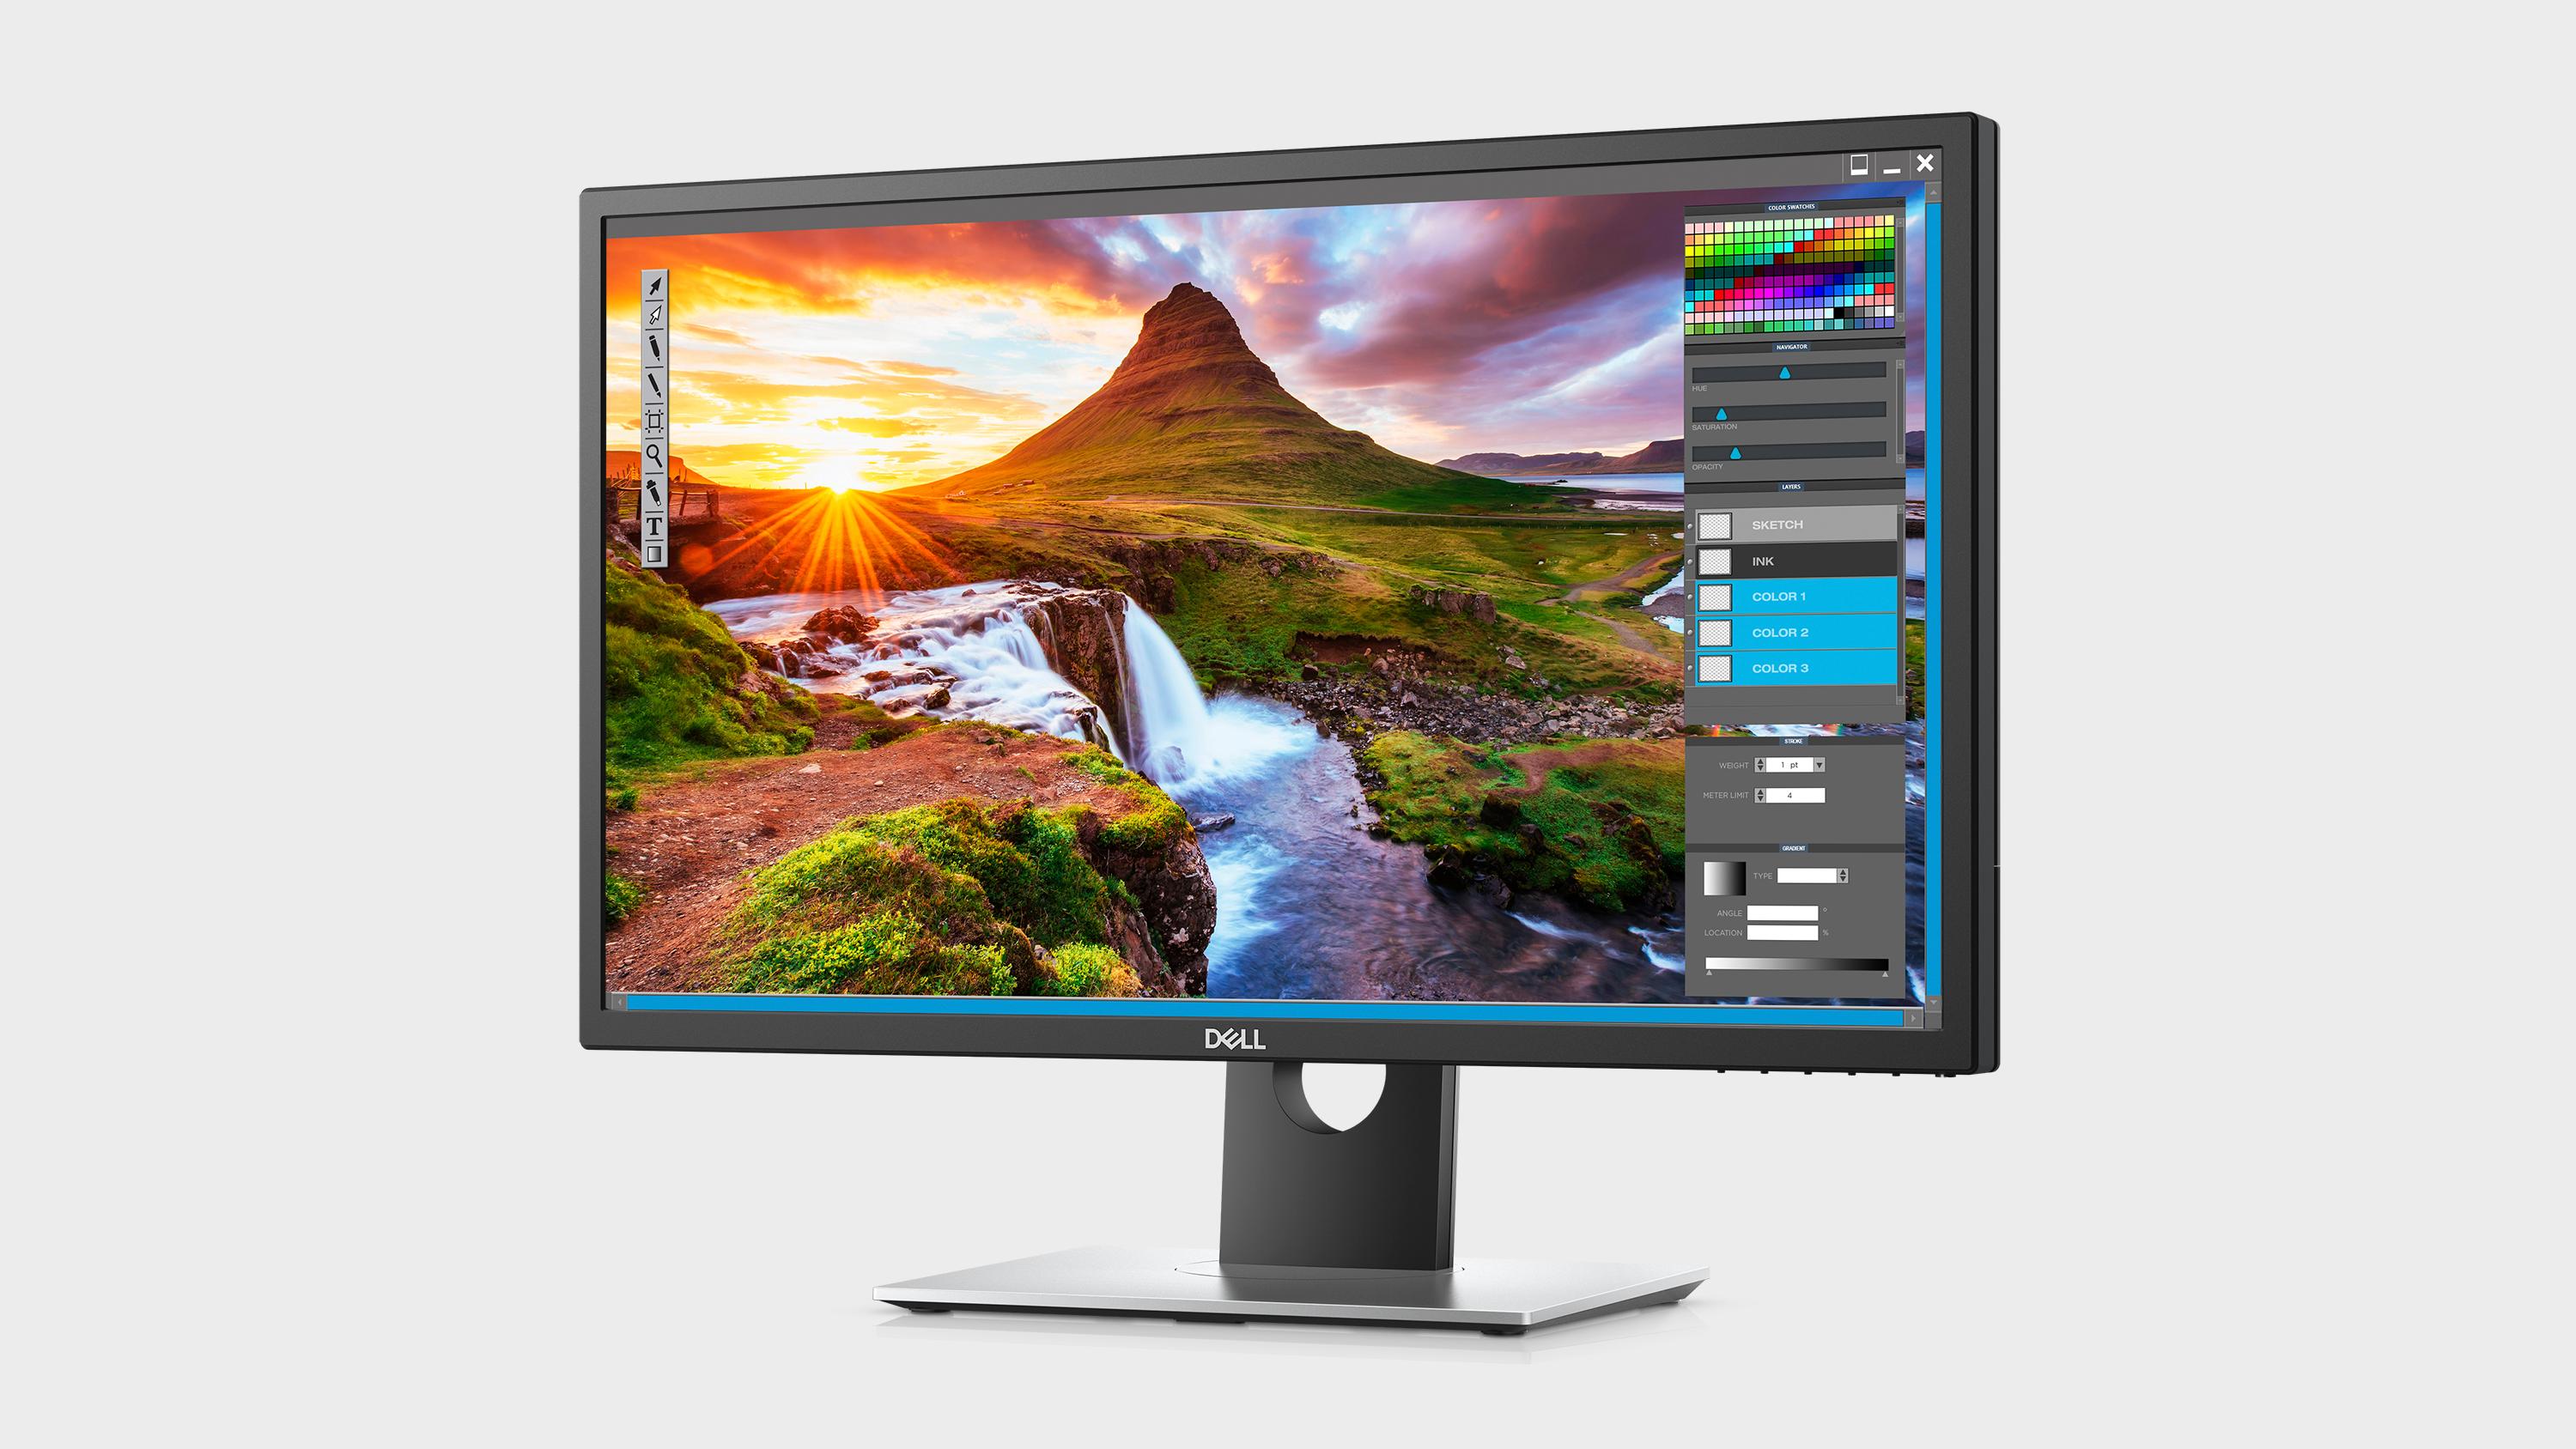 Dells nye PC-skjerm har både 4K-oppløsning og HDR